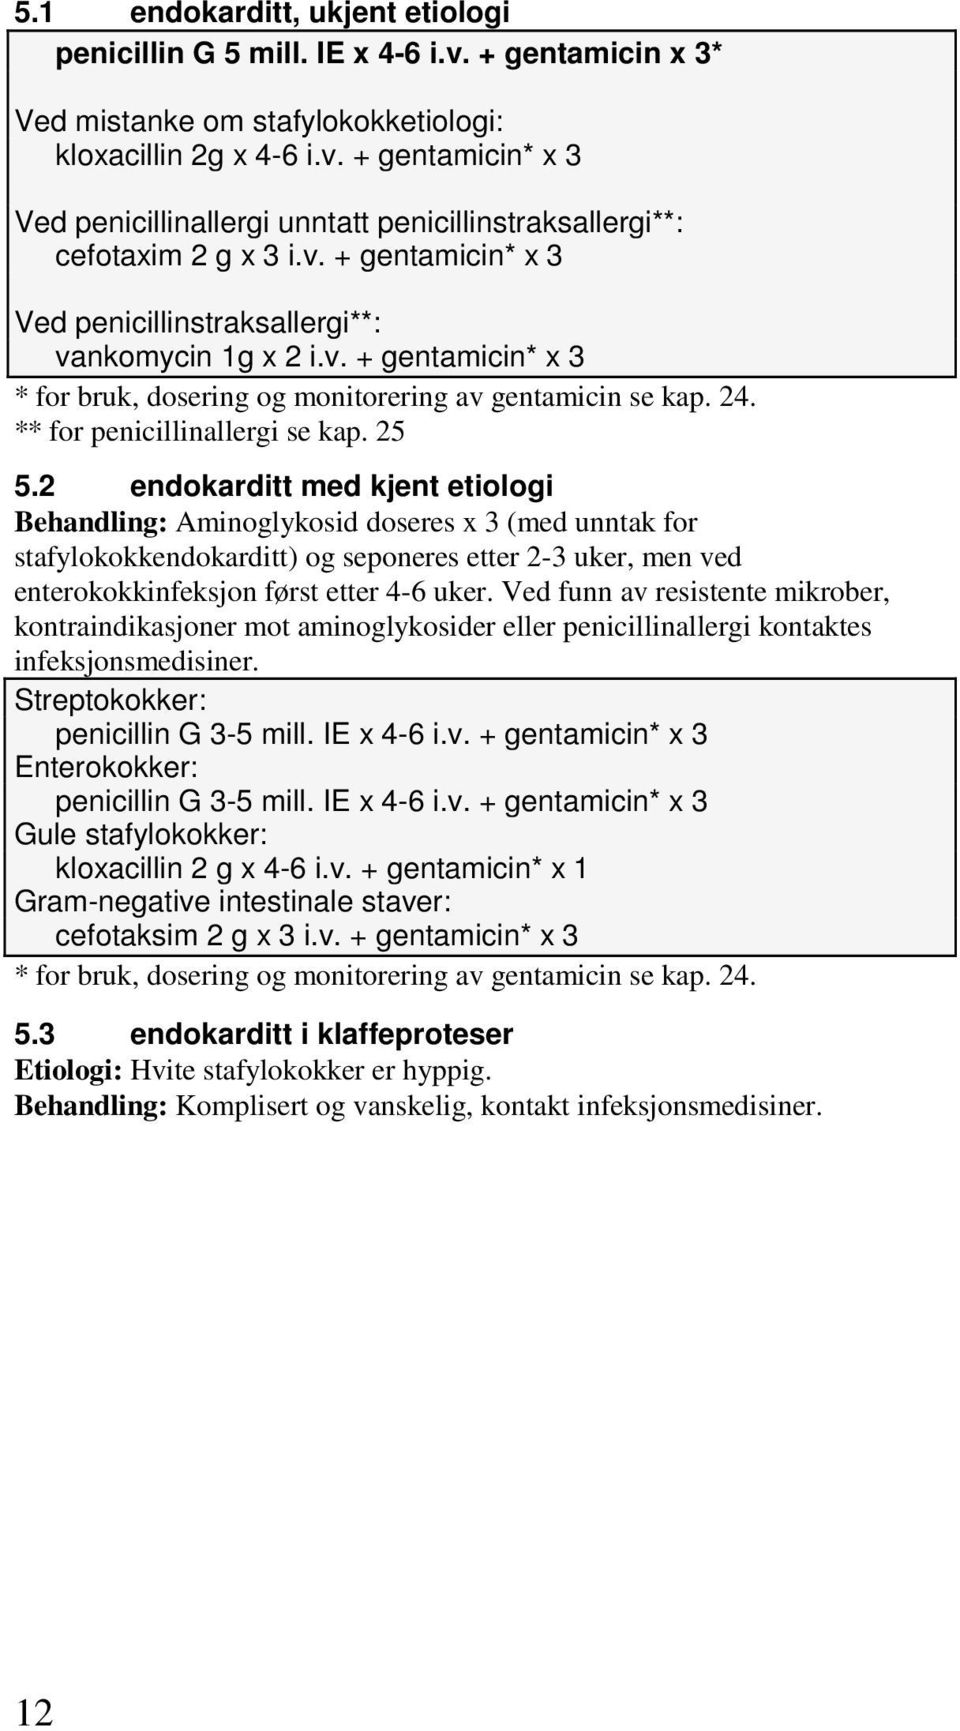 2 endokarditt med kjent etiologi Behandling: Aminoglykosid doseres x 3 (med unntak for stafylokokkendokarditt) og seponeres etter 2-3 uker, men ved enterokokkinfeksjon først etter 4-6 uker.